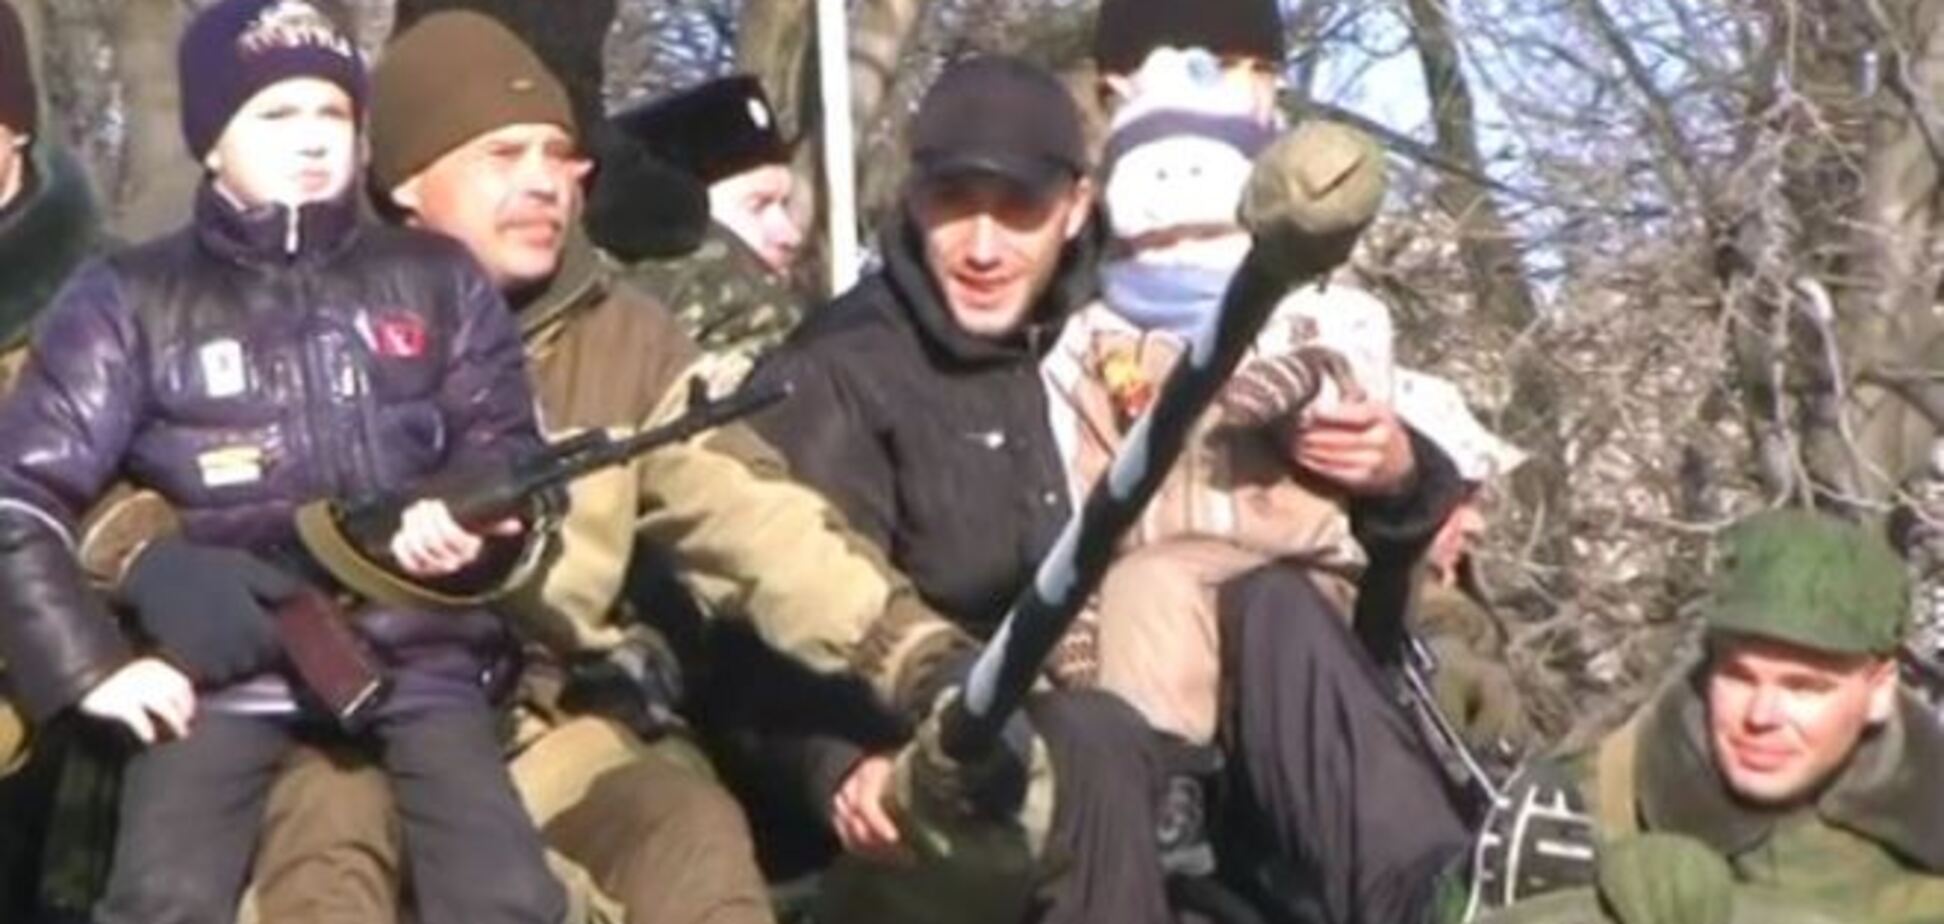 Терористи влаштували 'парад зла' в Ровеньках: діти з автоматами, прапори Росії та КПУ. Опубліковано відео